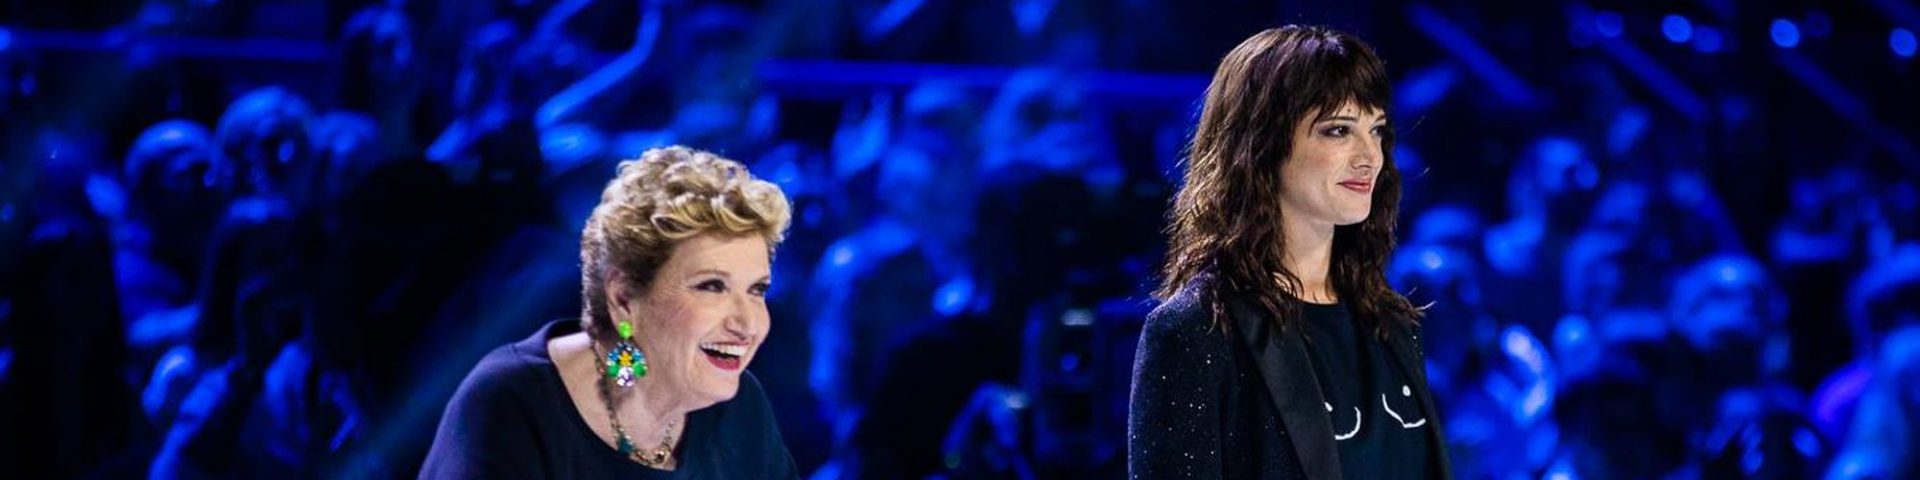 X Factor 12: seconda parte di Bootcamp con Mara Maionchi e Asia Argento